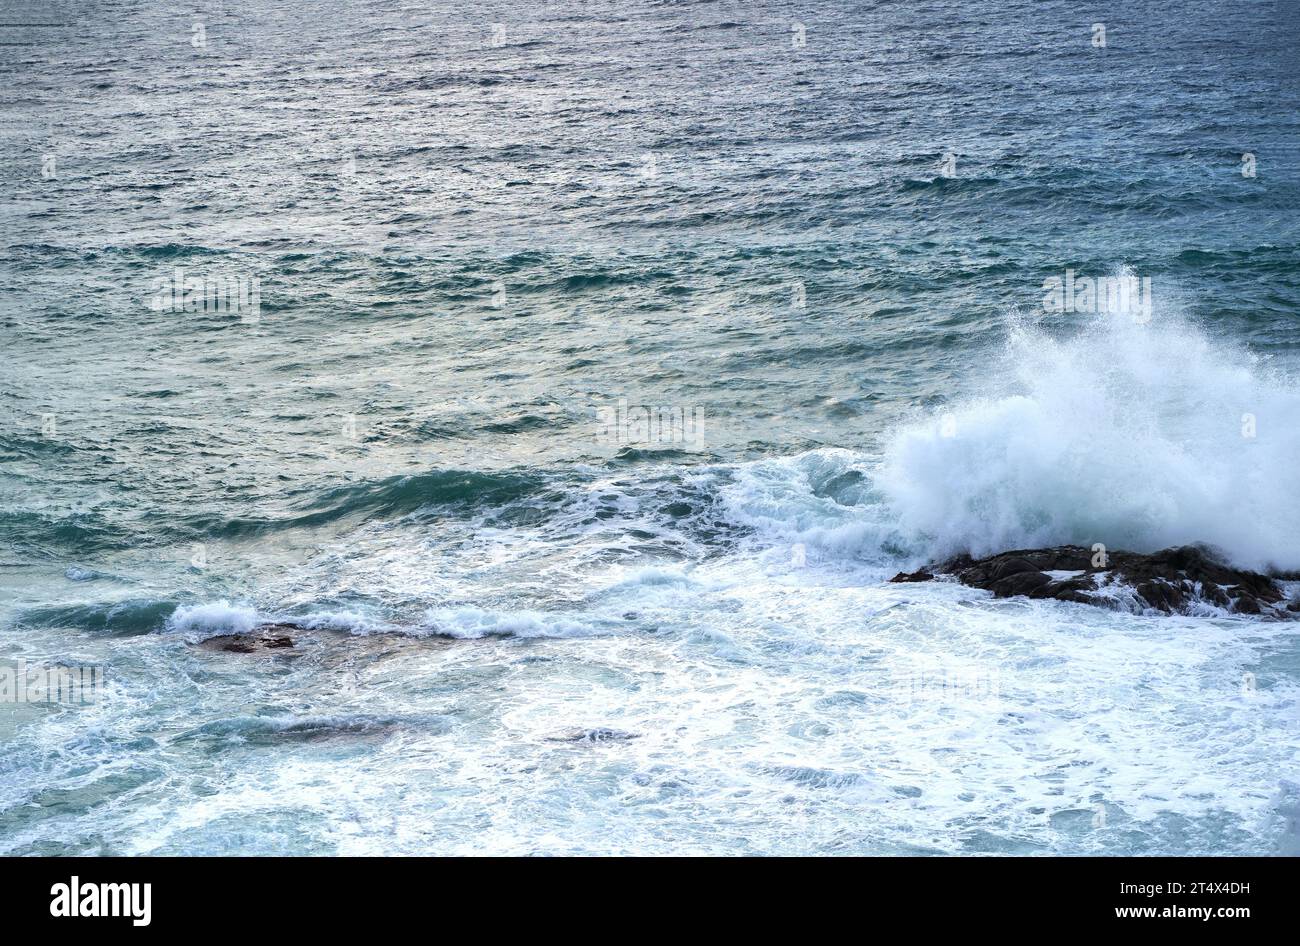 Mer. Belles vagues. Vertigineux, tourbillonnant vagues d'eau mousseuse à la mer Méditerranée. Banque D'Images